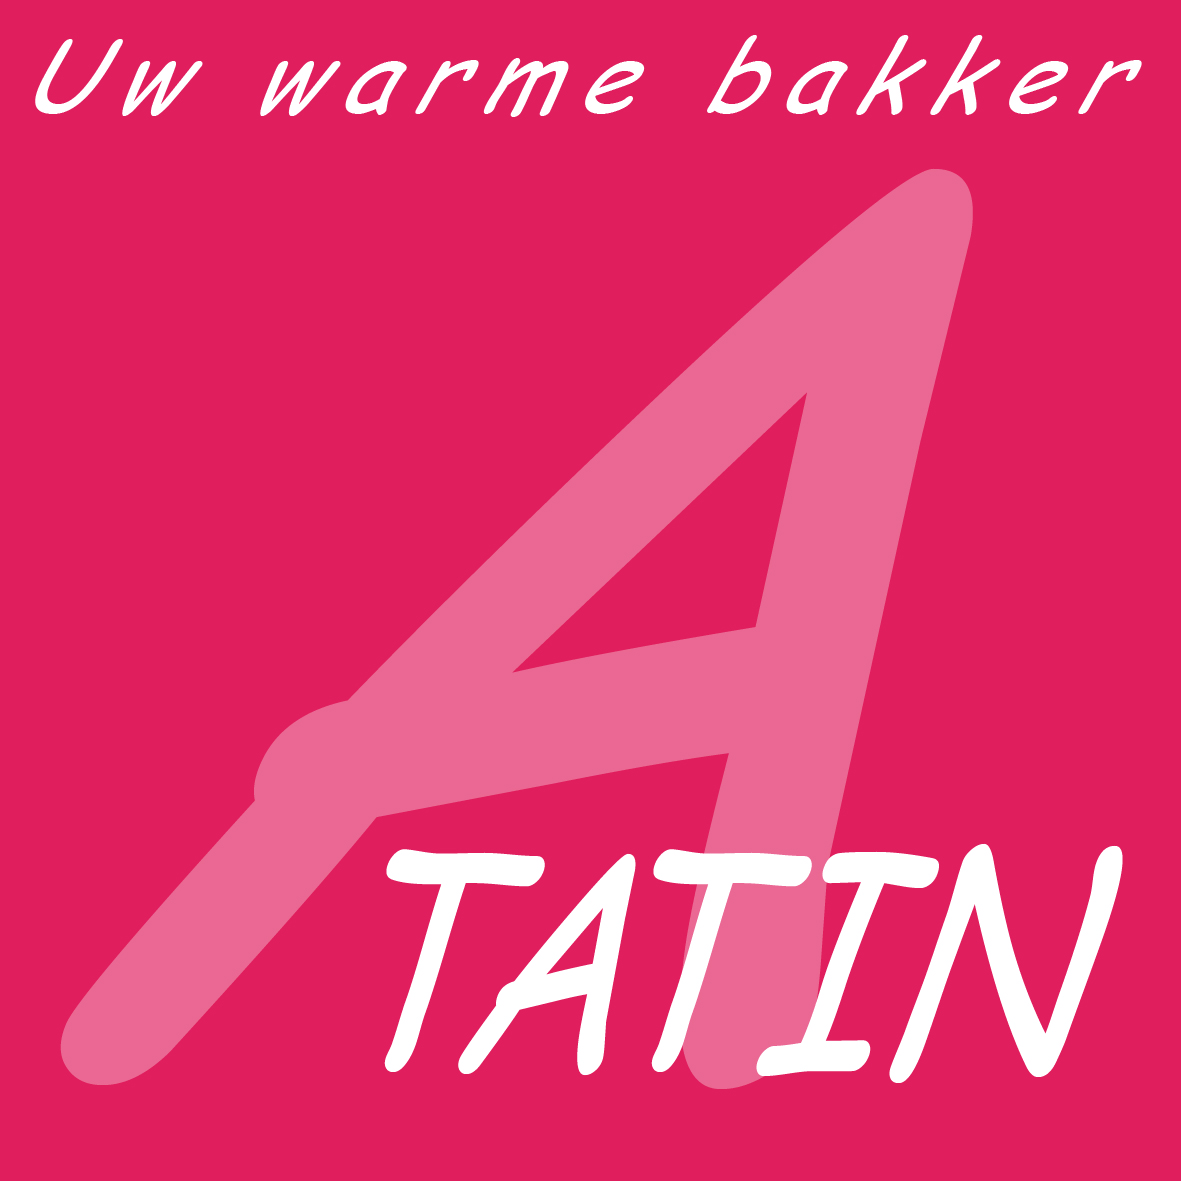 A TATIN